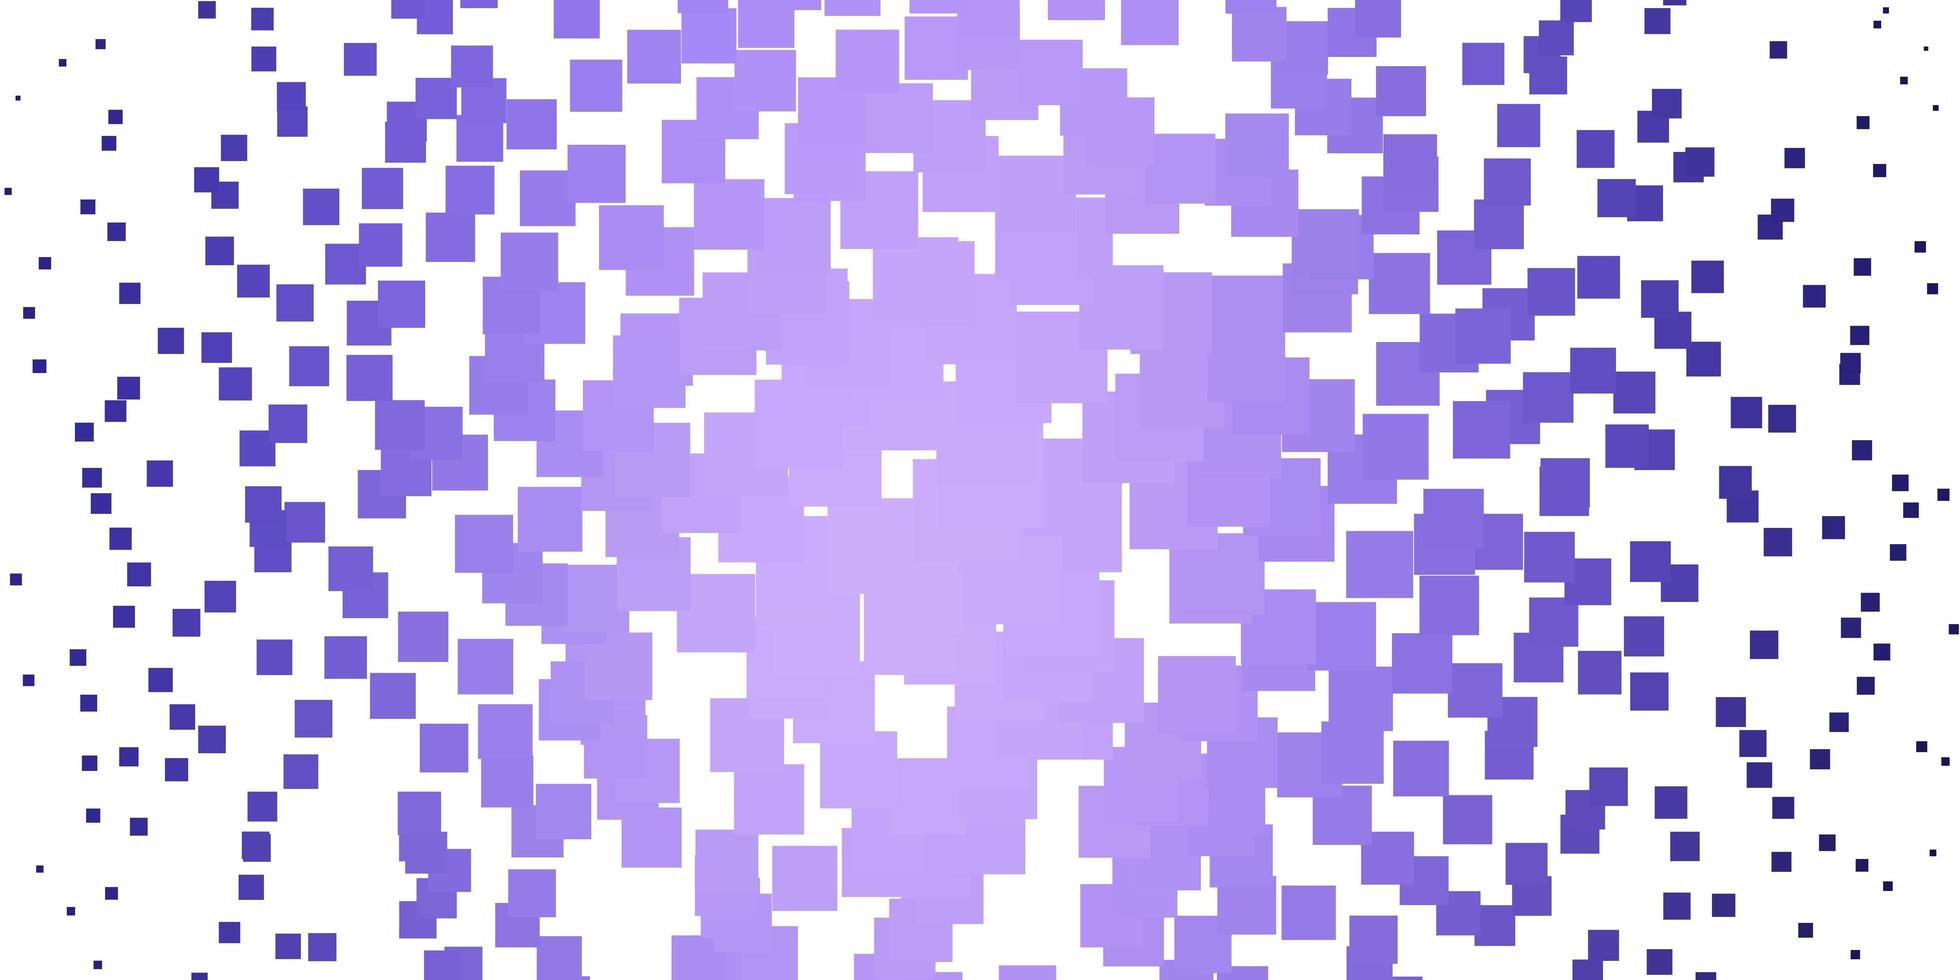 modèle vectoriel violet clair dans un style carré.